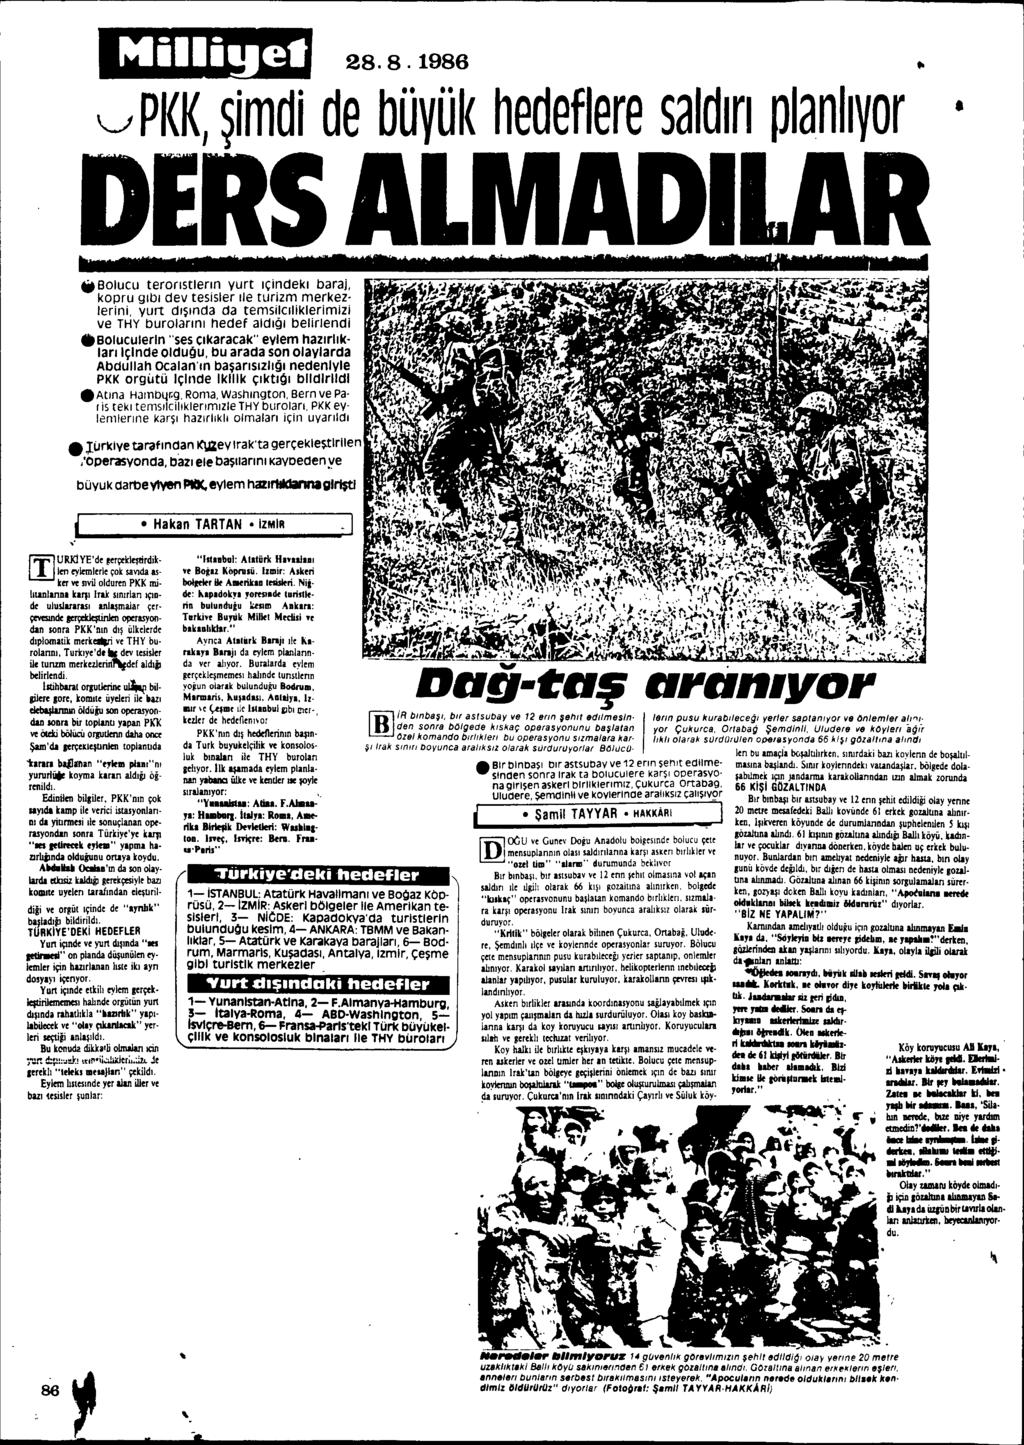 28.8.1986.. v PKK, ~imdi de büyük hedefiere saldlrl planllyor DElS ALMADI I.. Bolucu teronstlenn yurt lçindekl baraj, kopru glbl dey tesisler Ile turizm merkez.